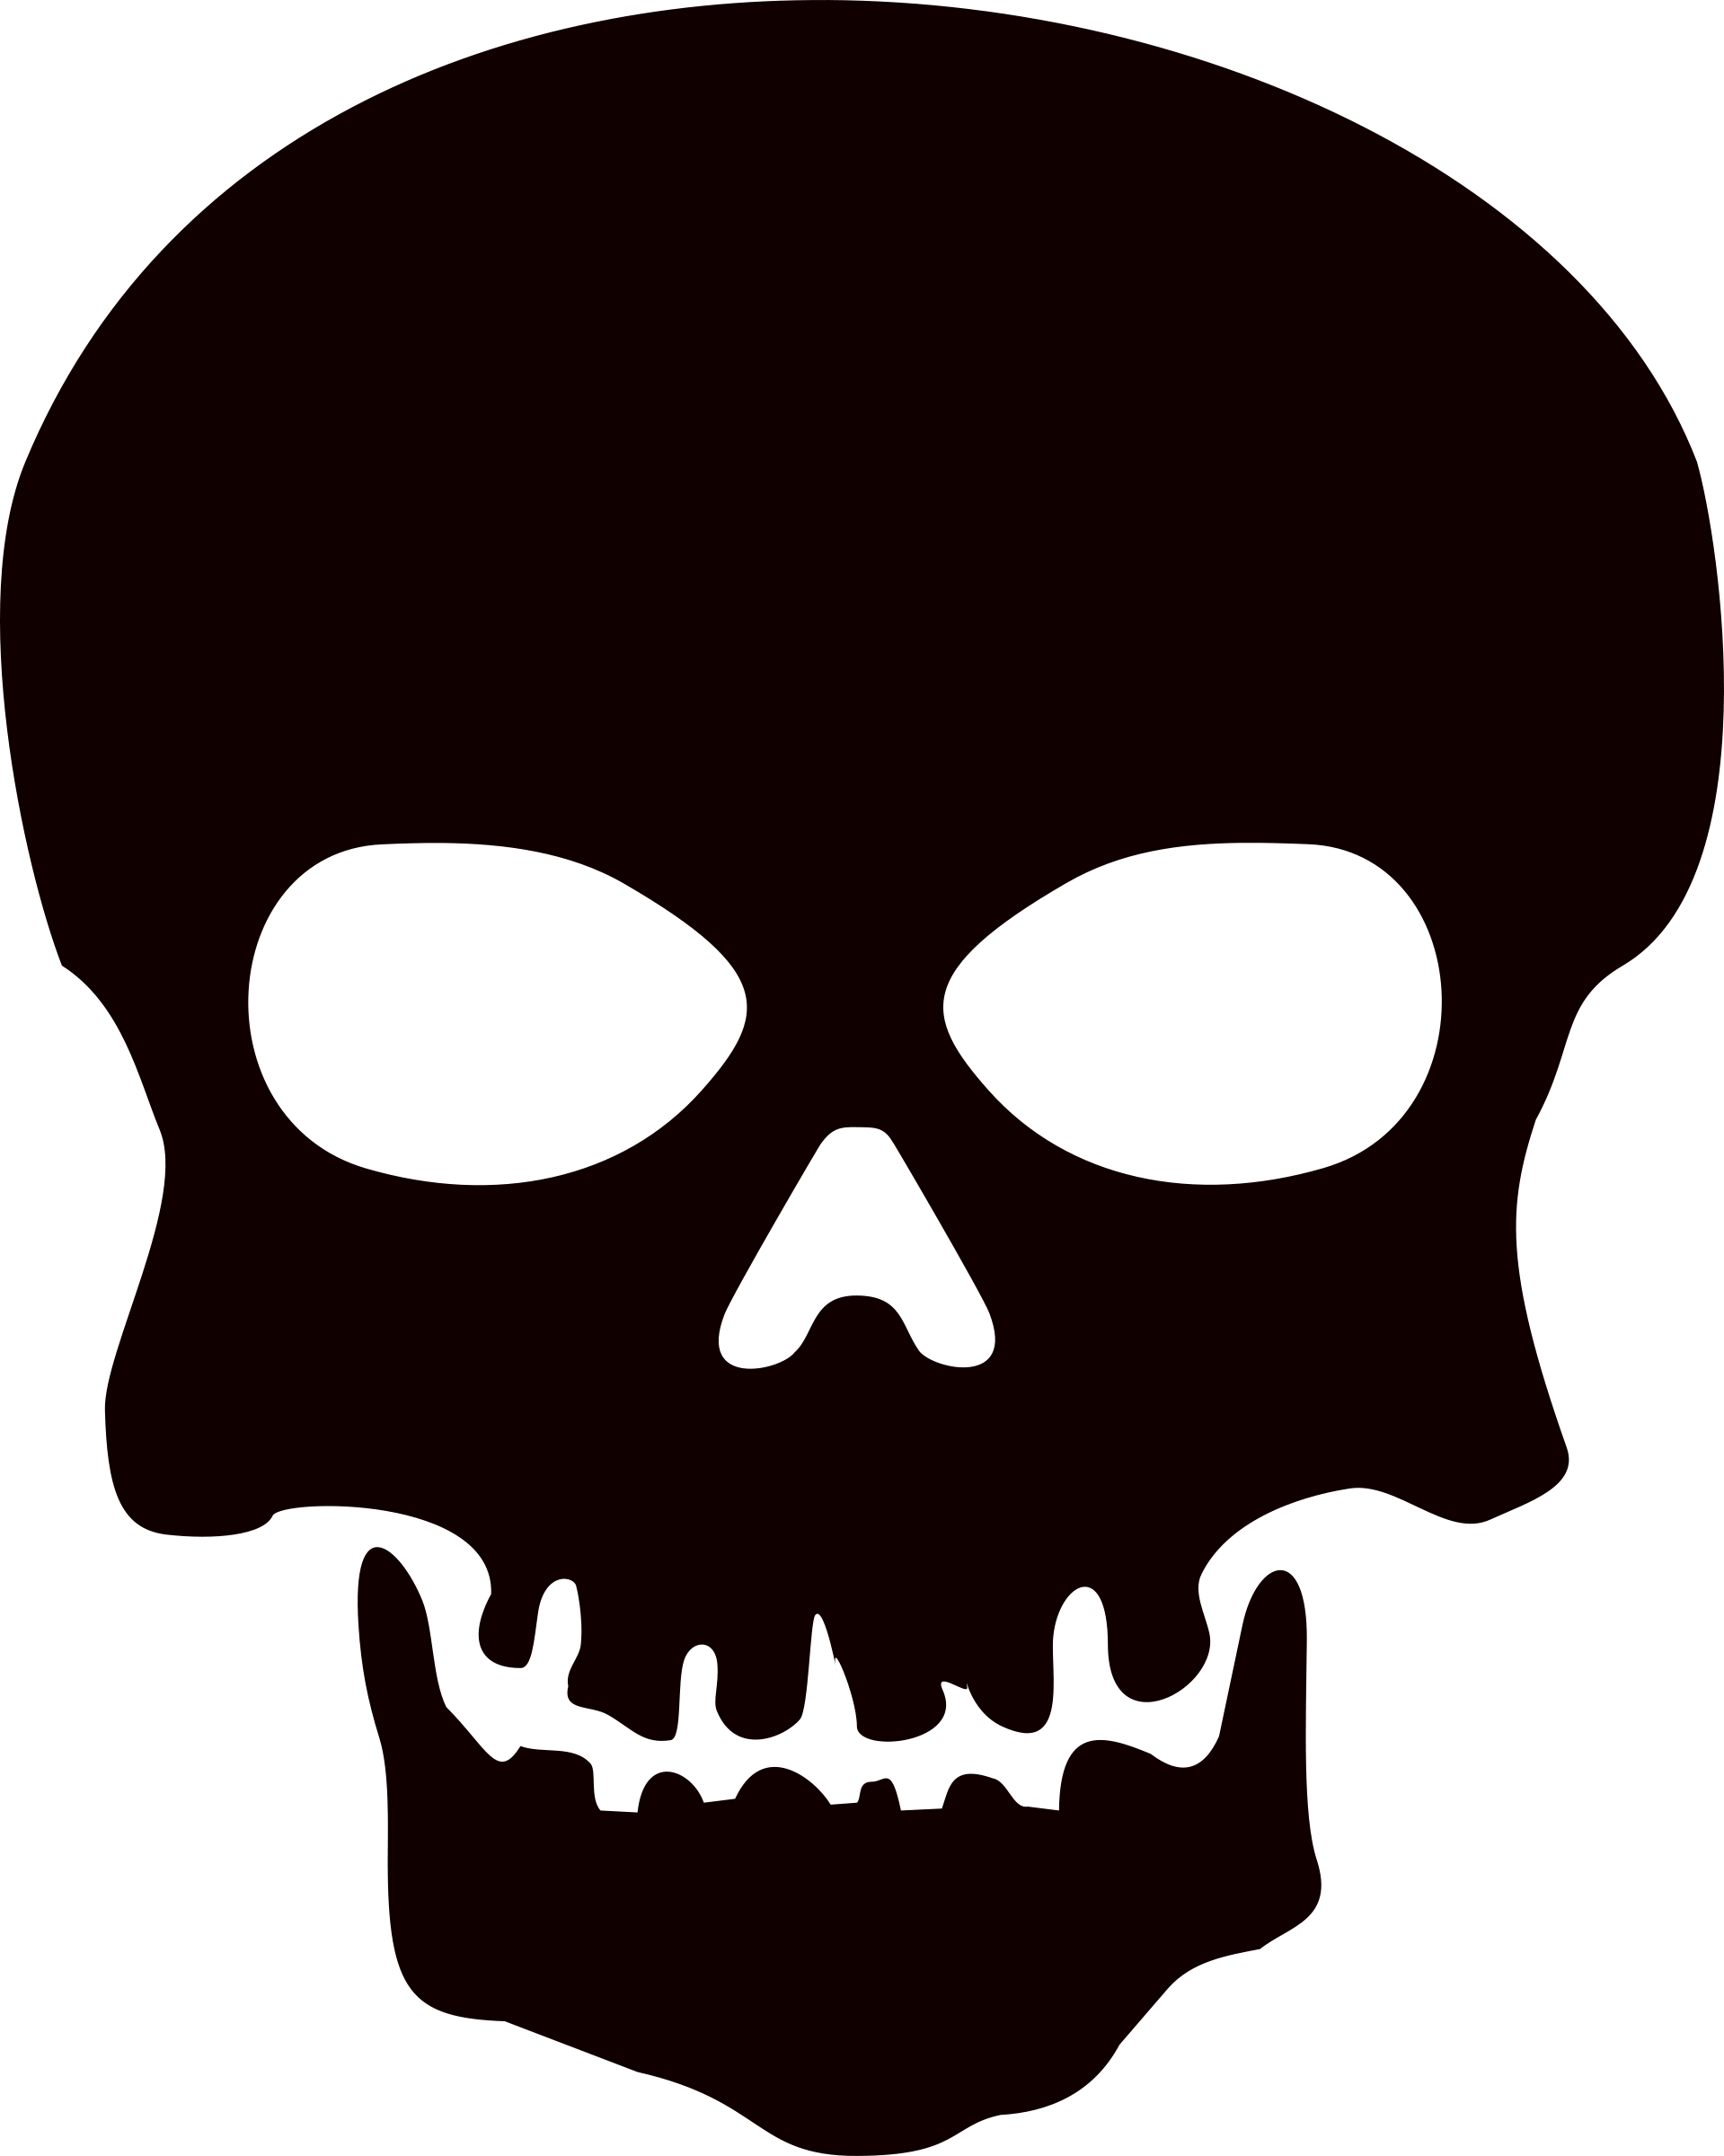 Skeleton, skulls PNG images free download